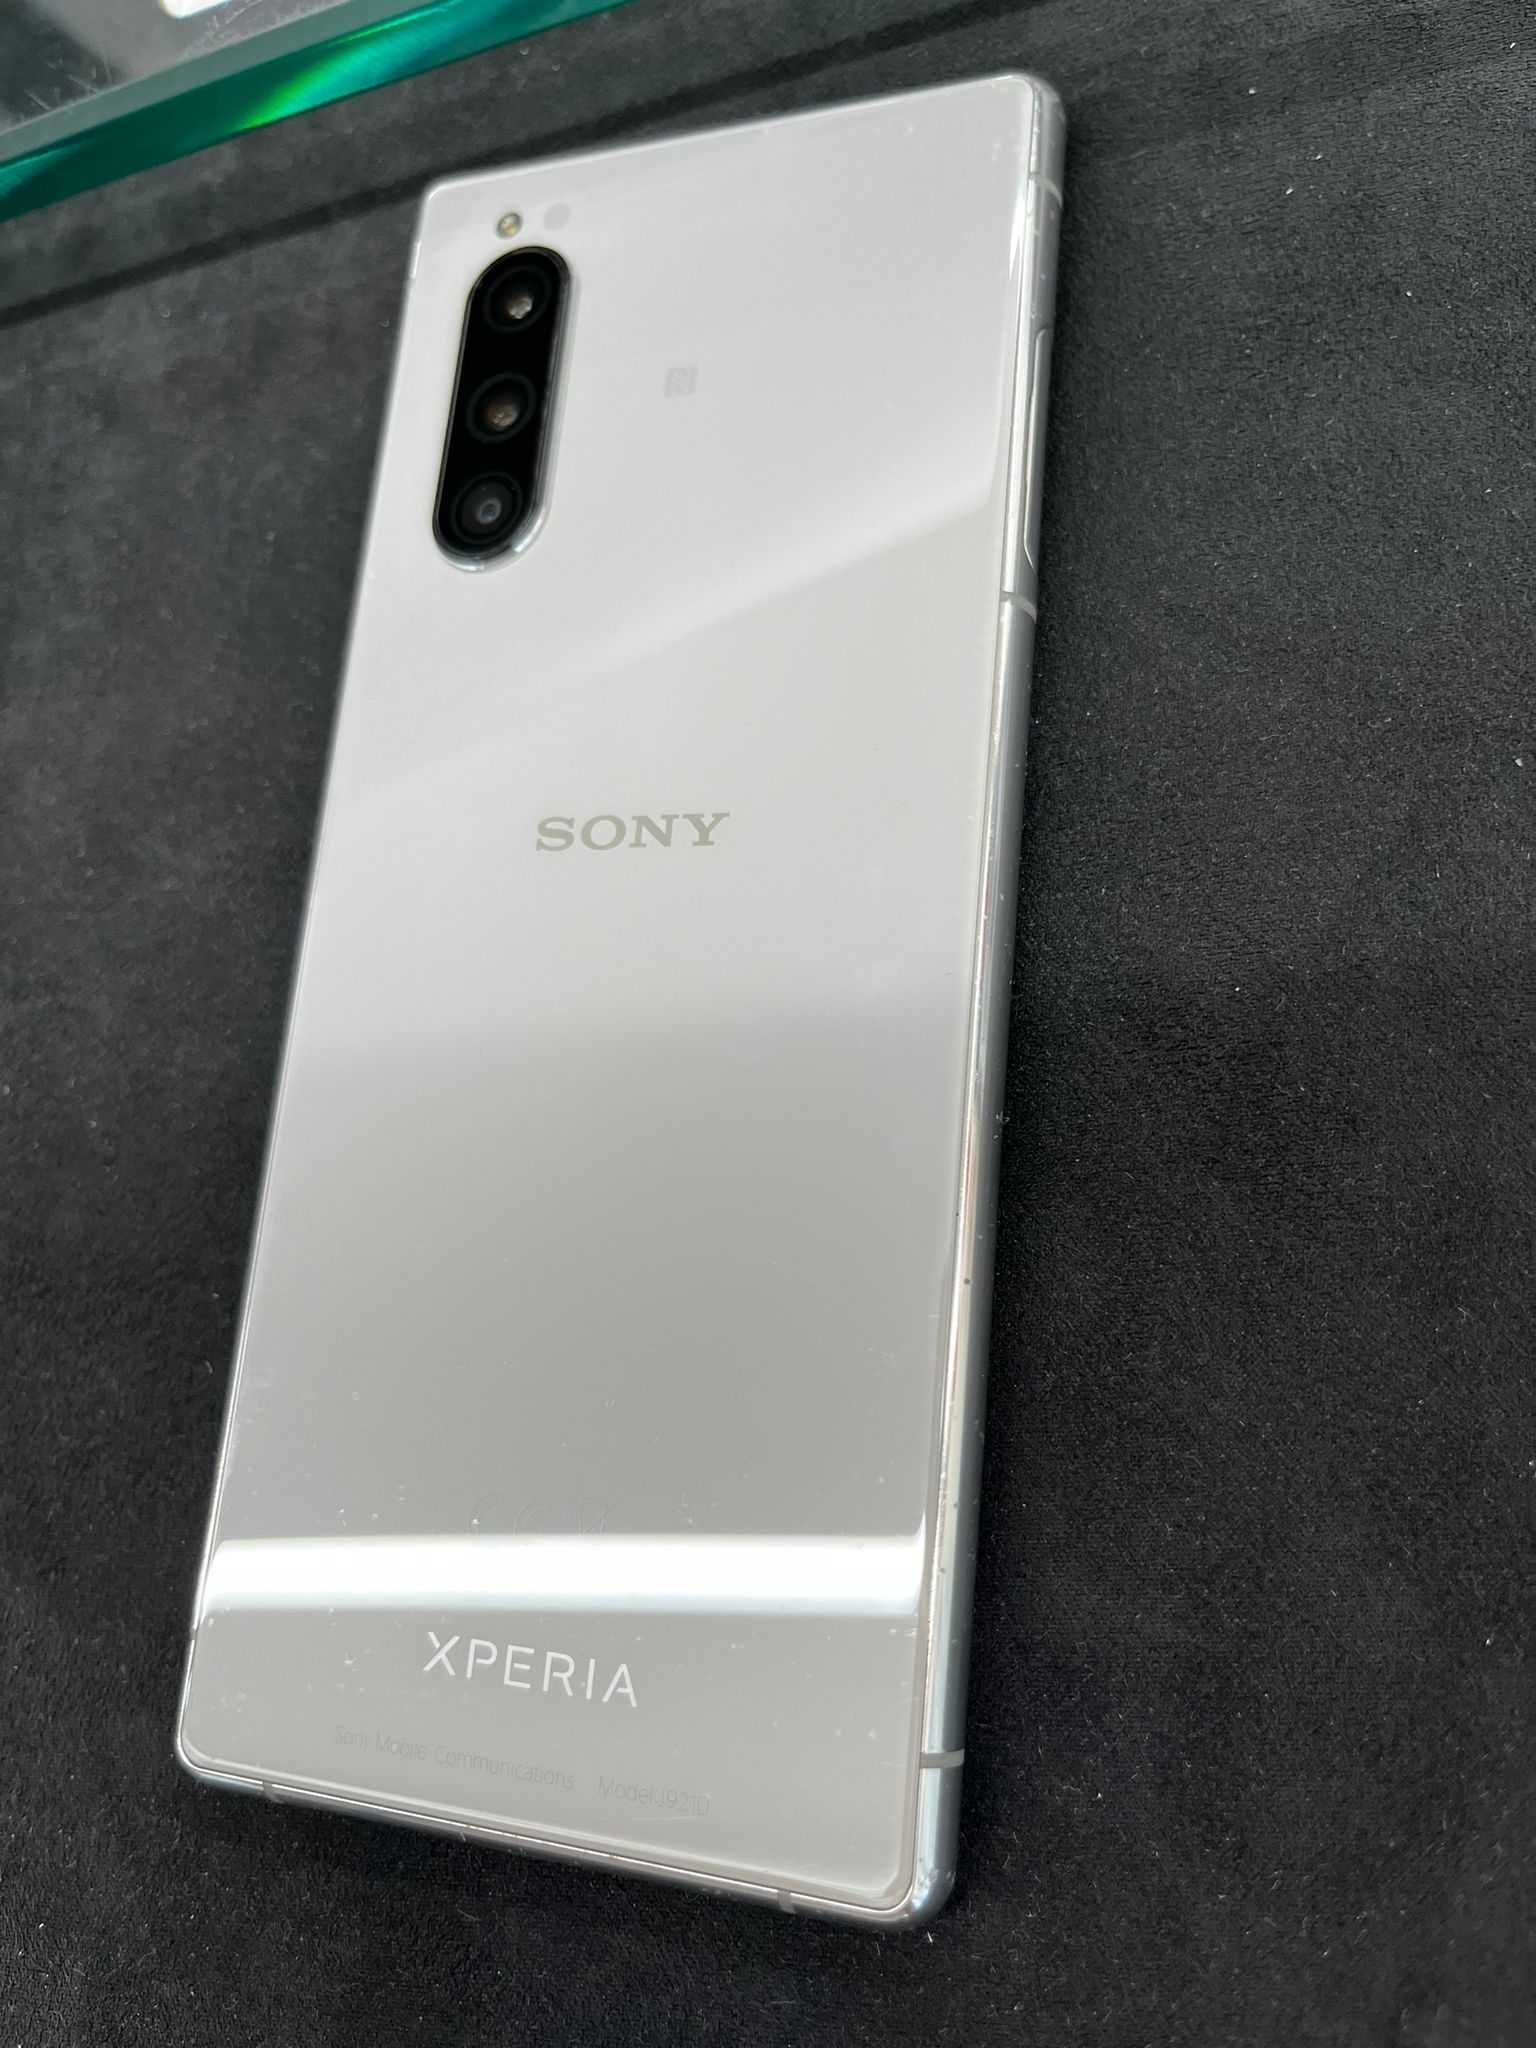 Sony Xperia 5 prateado